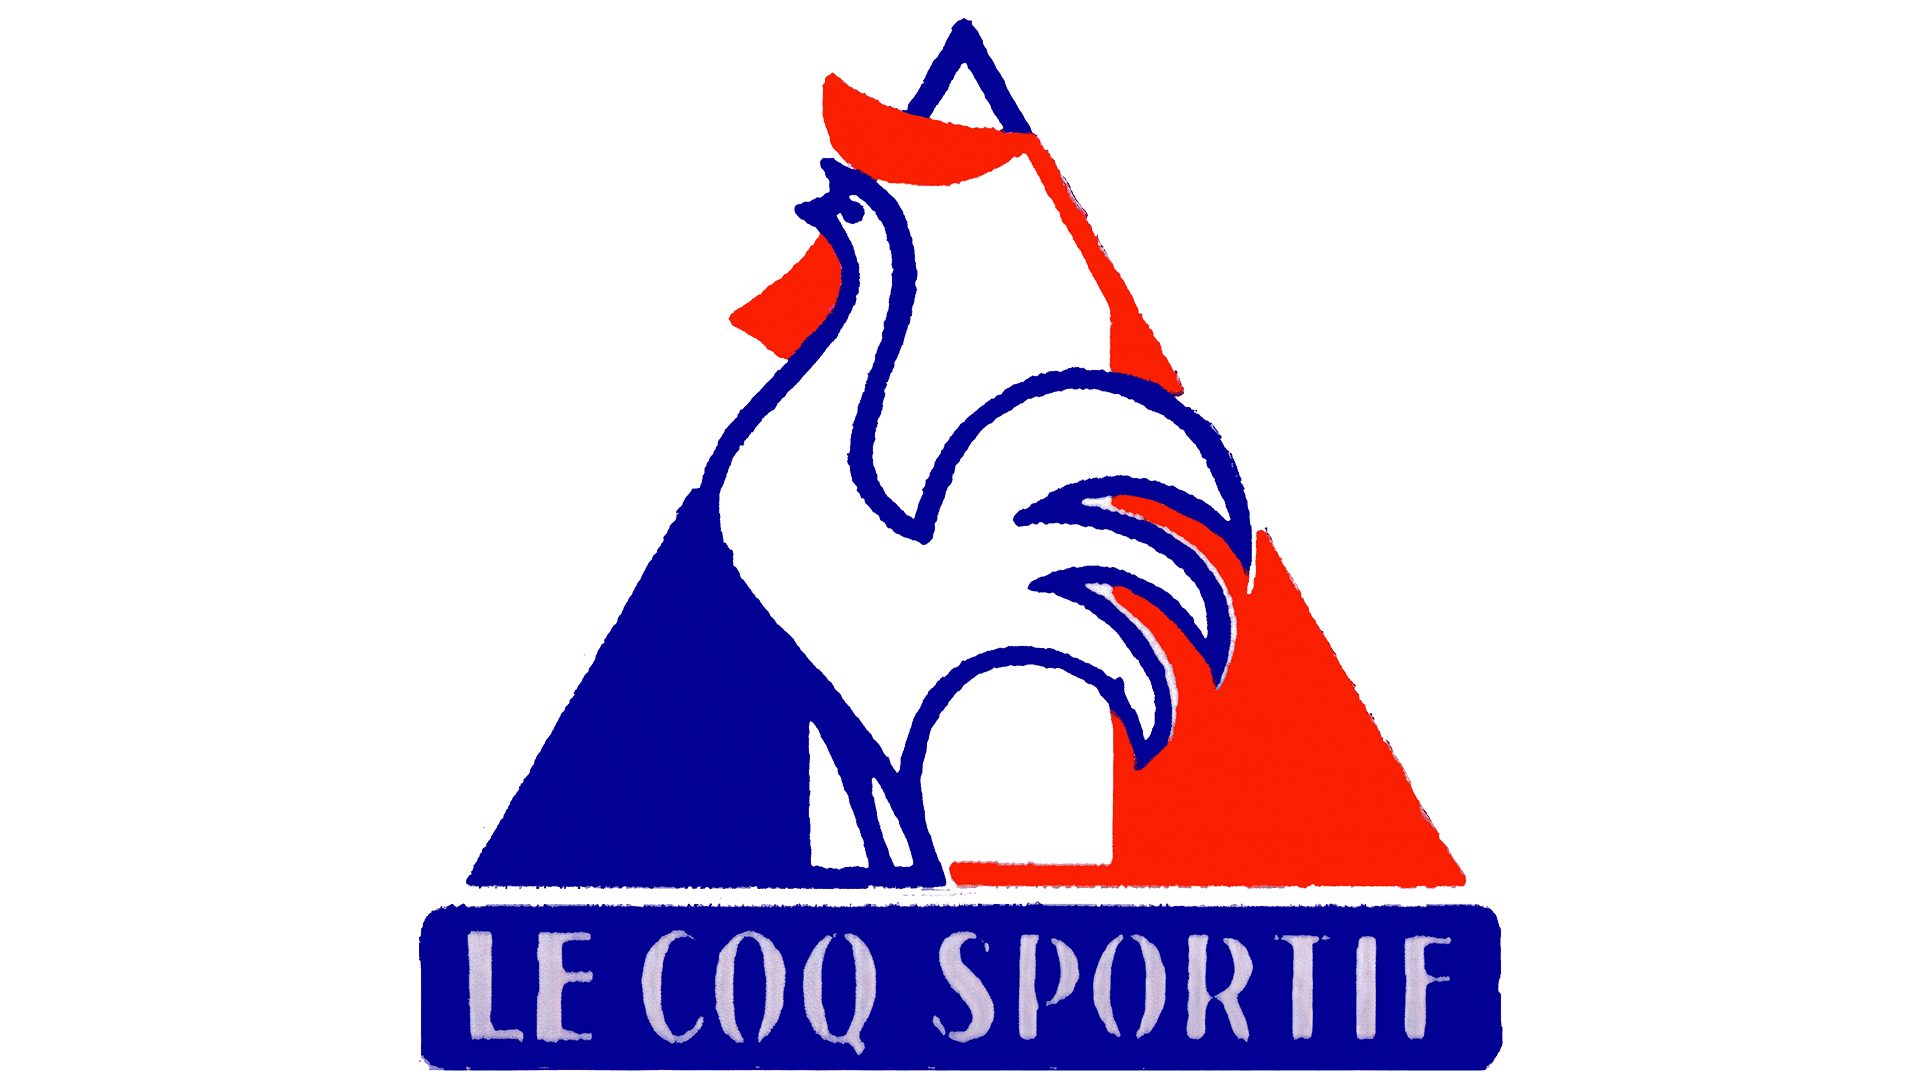 Le Coq Sportif Logo - Storia e significato dell'emblema del marchio